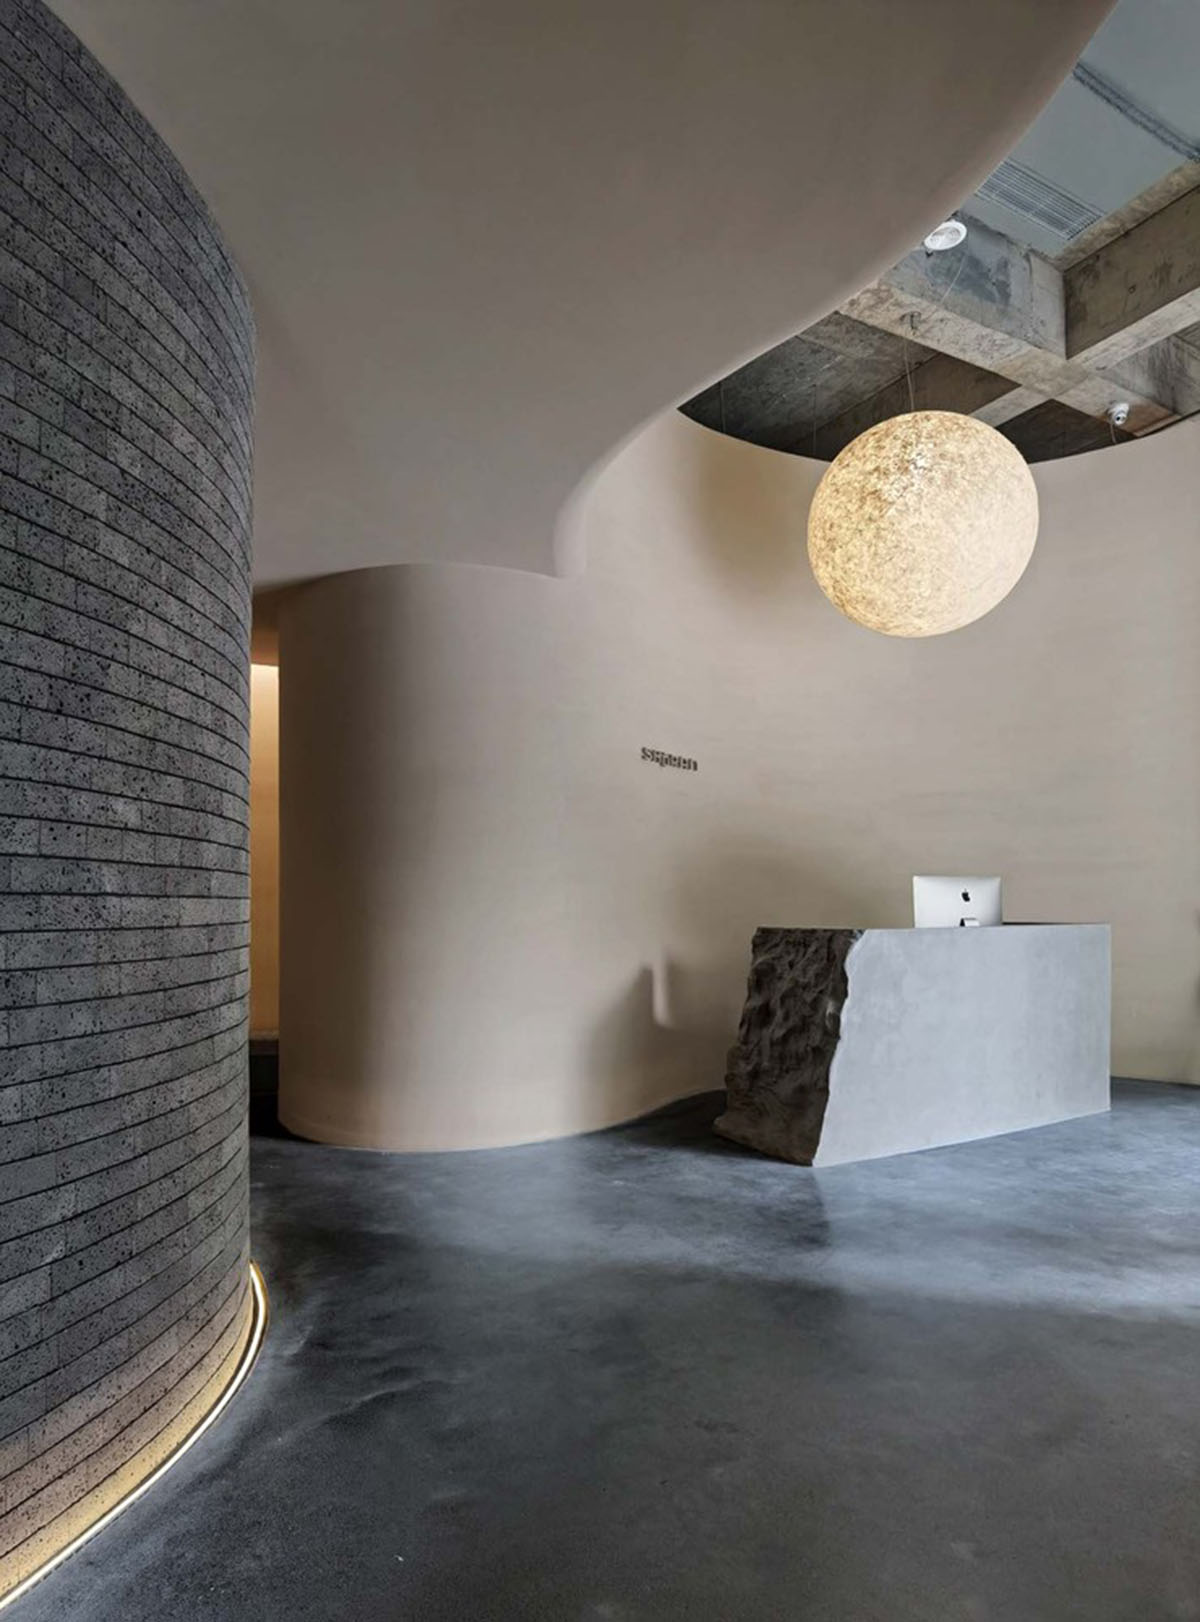 Гладкие углы и закругленные стены образуют похожий на пещеру оздоровительный центр, разработанный E Studio в Китае. 